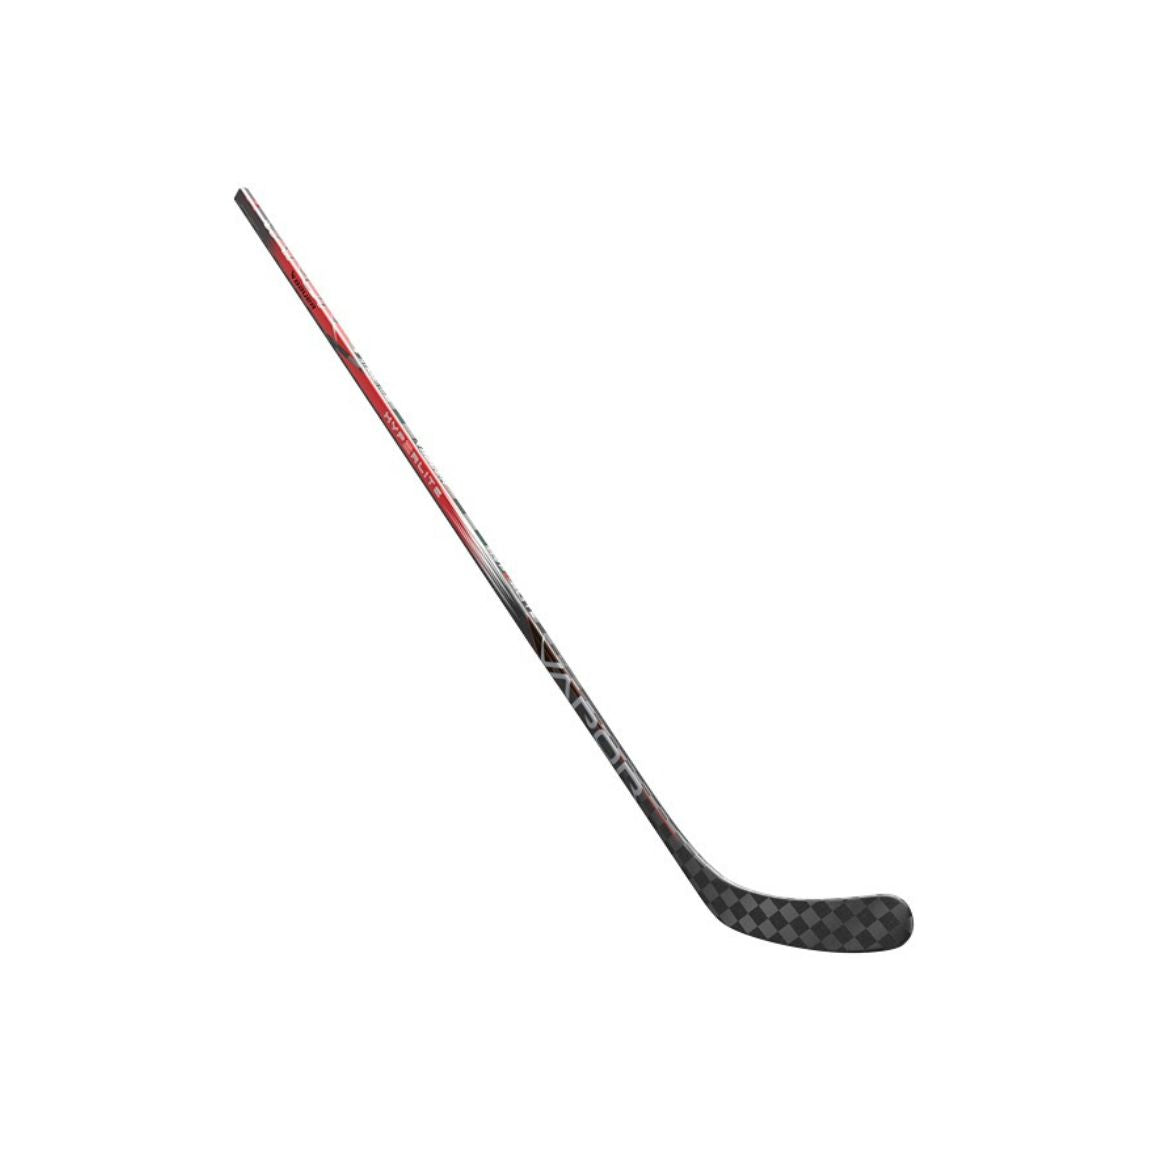 Bauer Vapor Hyperlite 2 Hockey Stick (RED) - Senior